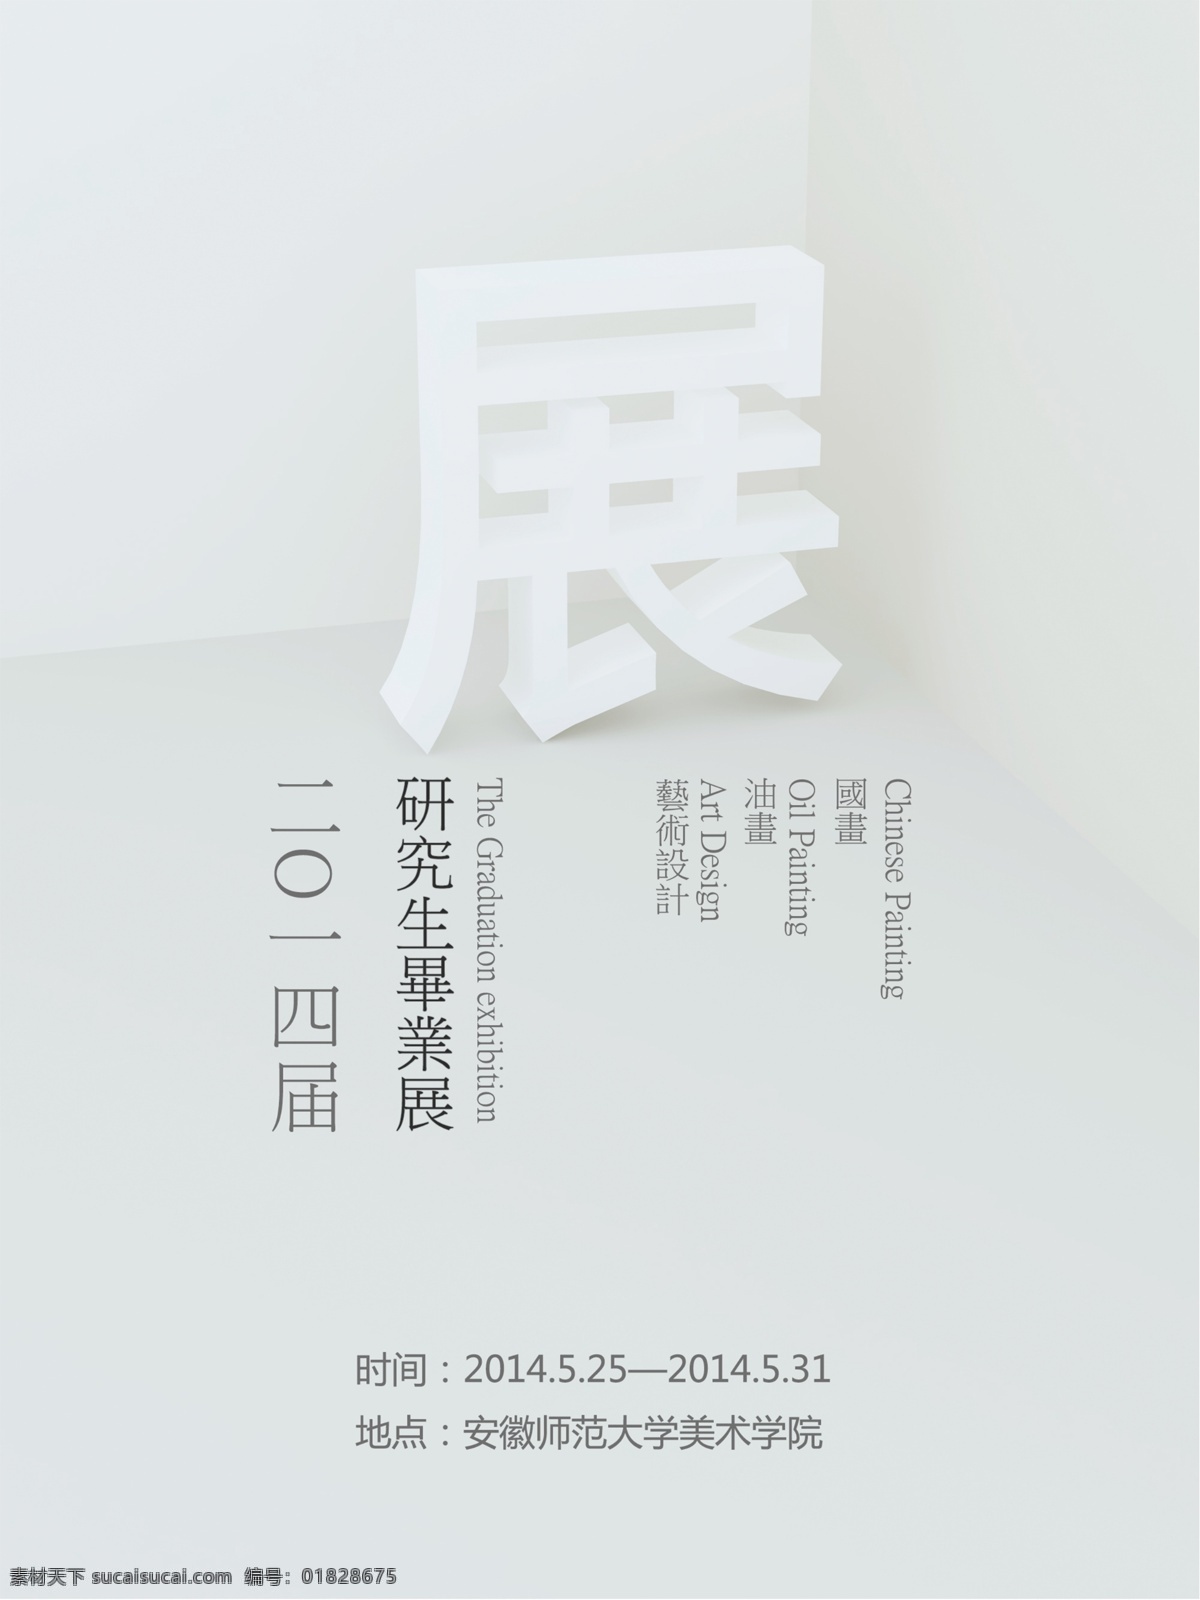 研究生 毕业 展 海报 毕业展 3d 平面设计 台湾风格 立体视觉